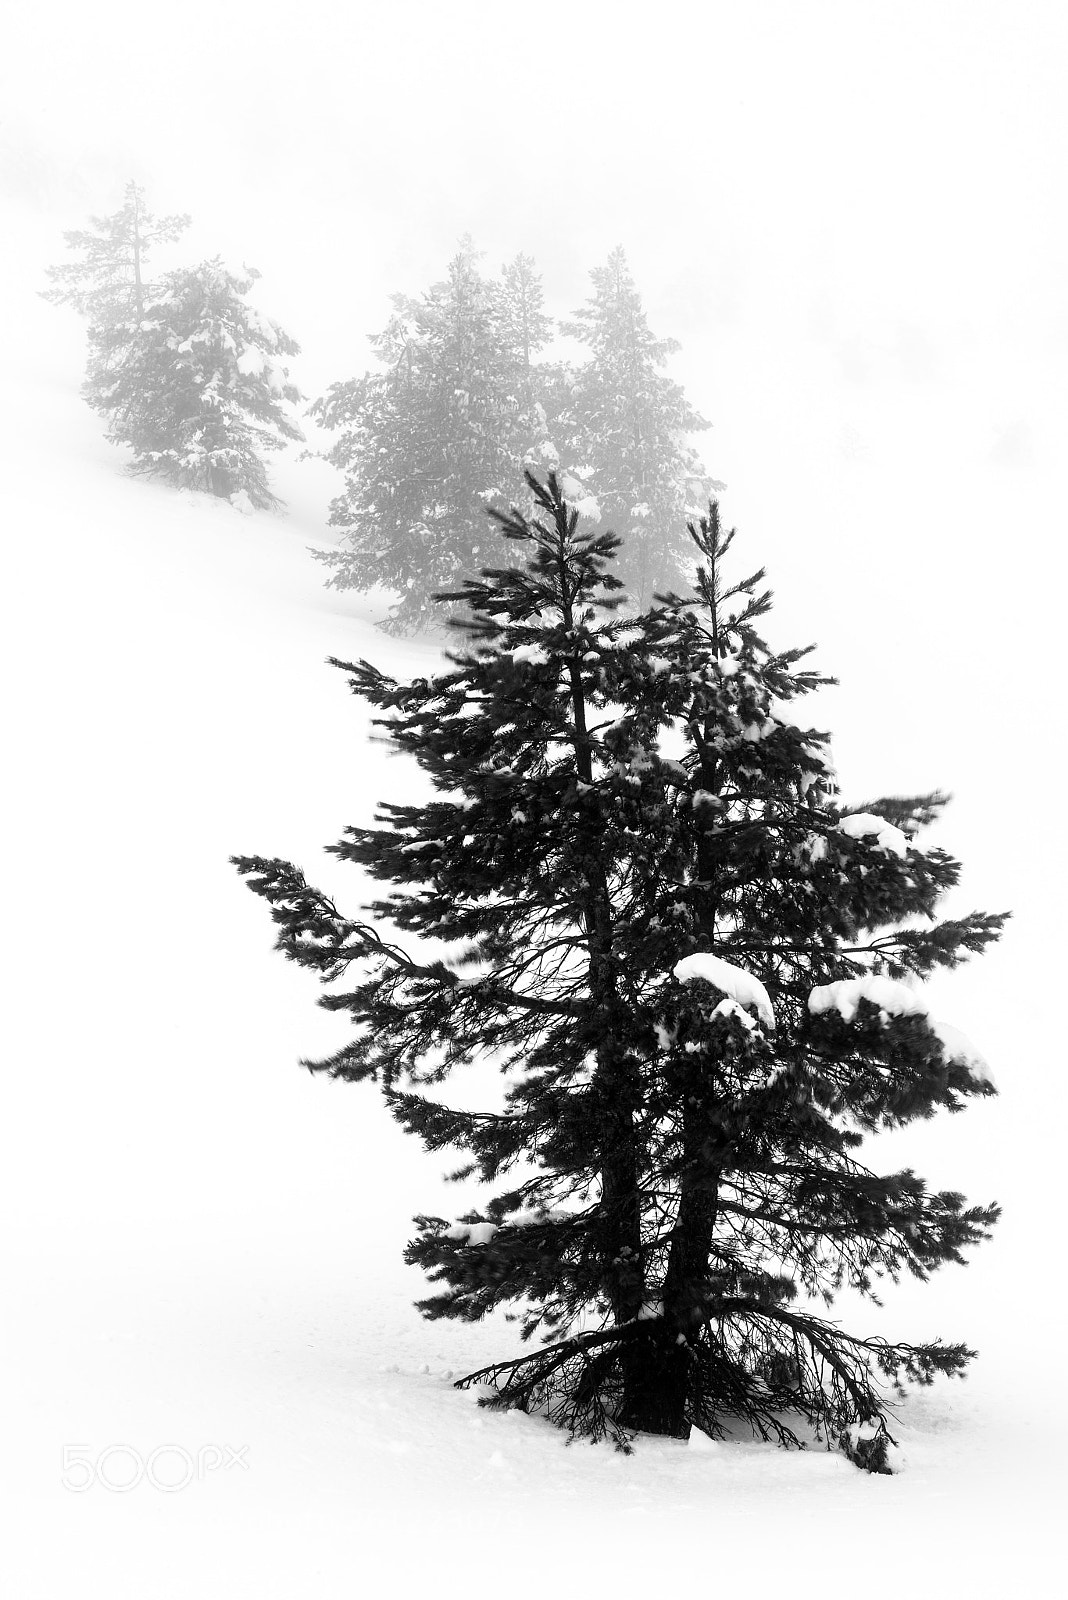 Nikon D810 sample photo. Tormenta de nieve photography